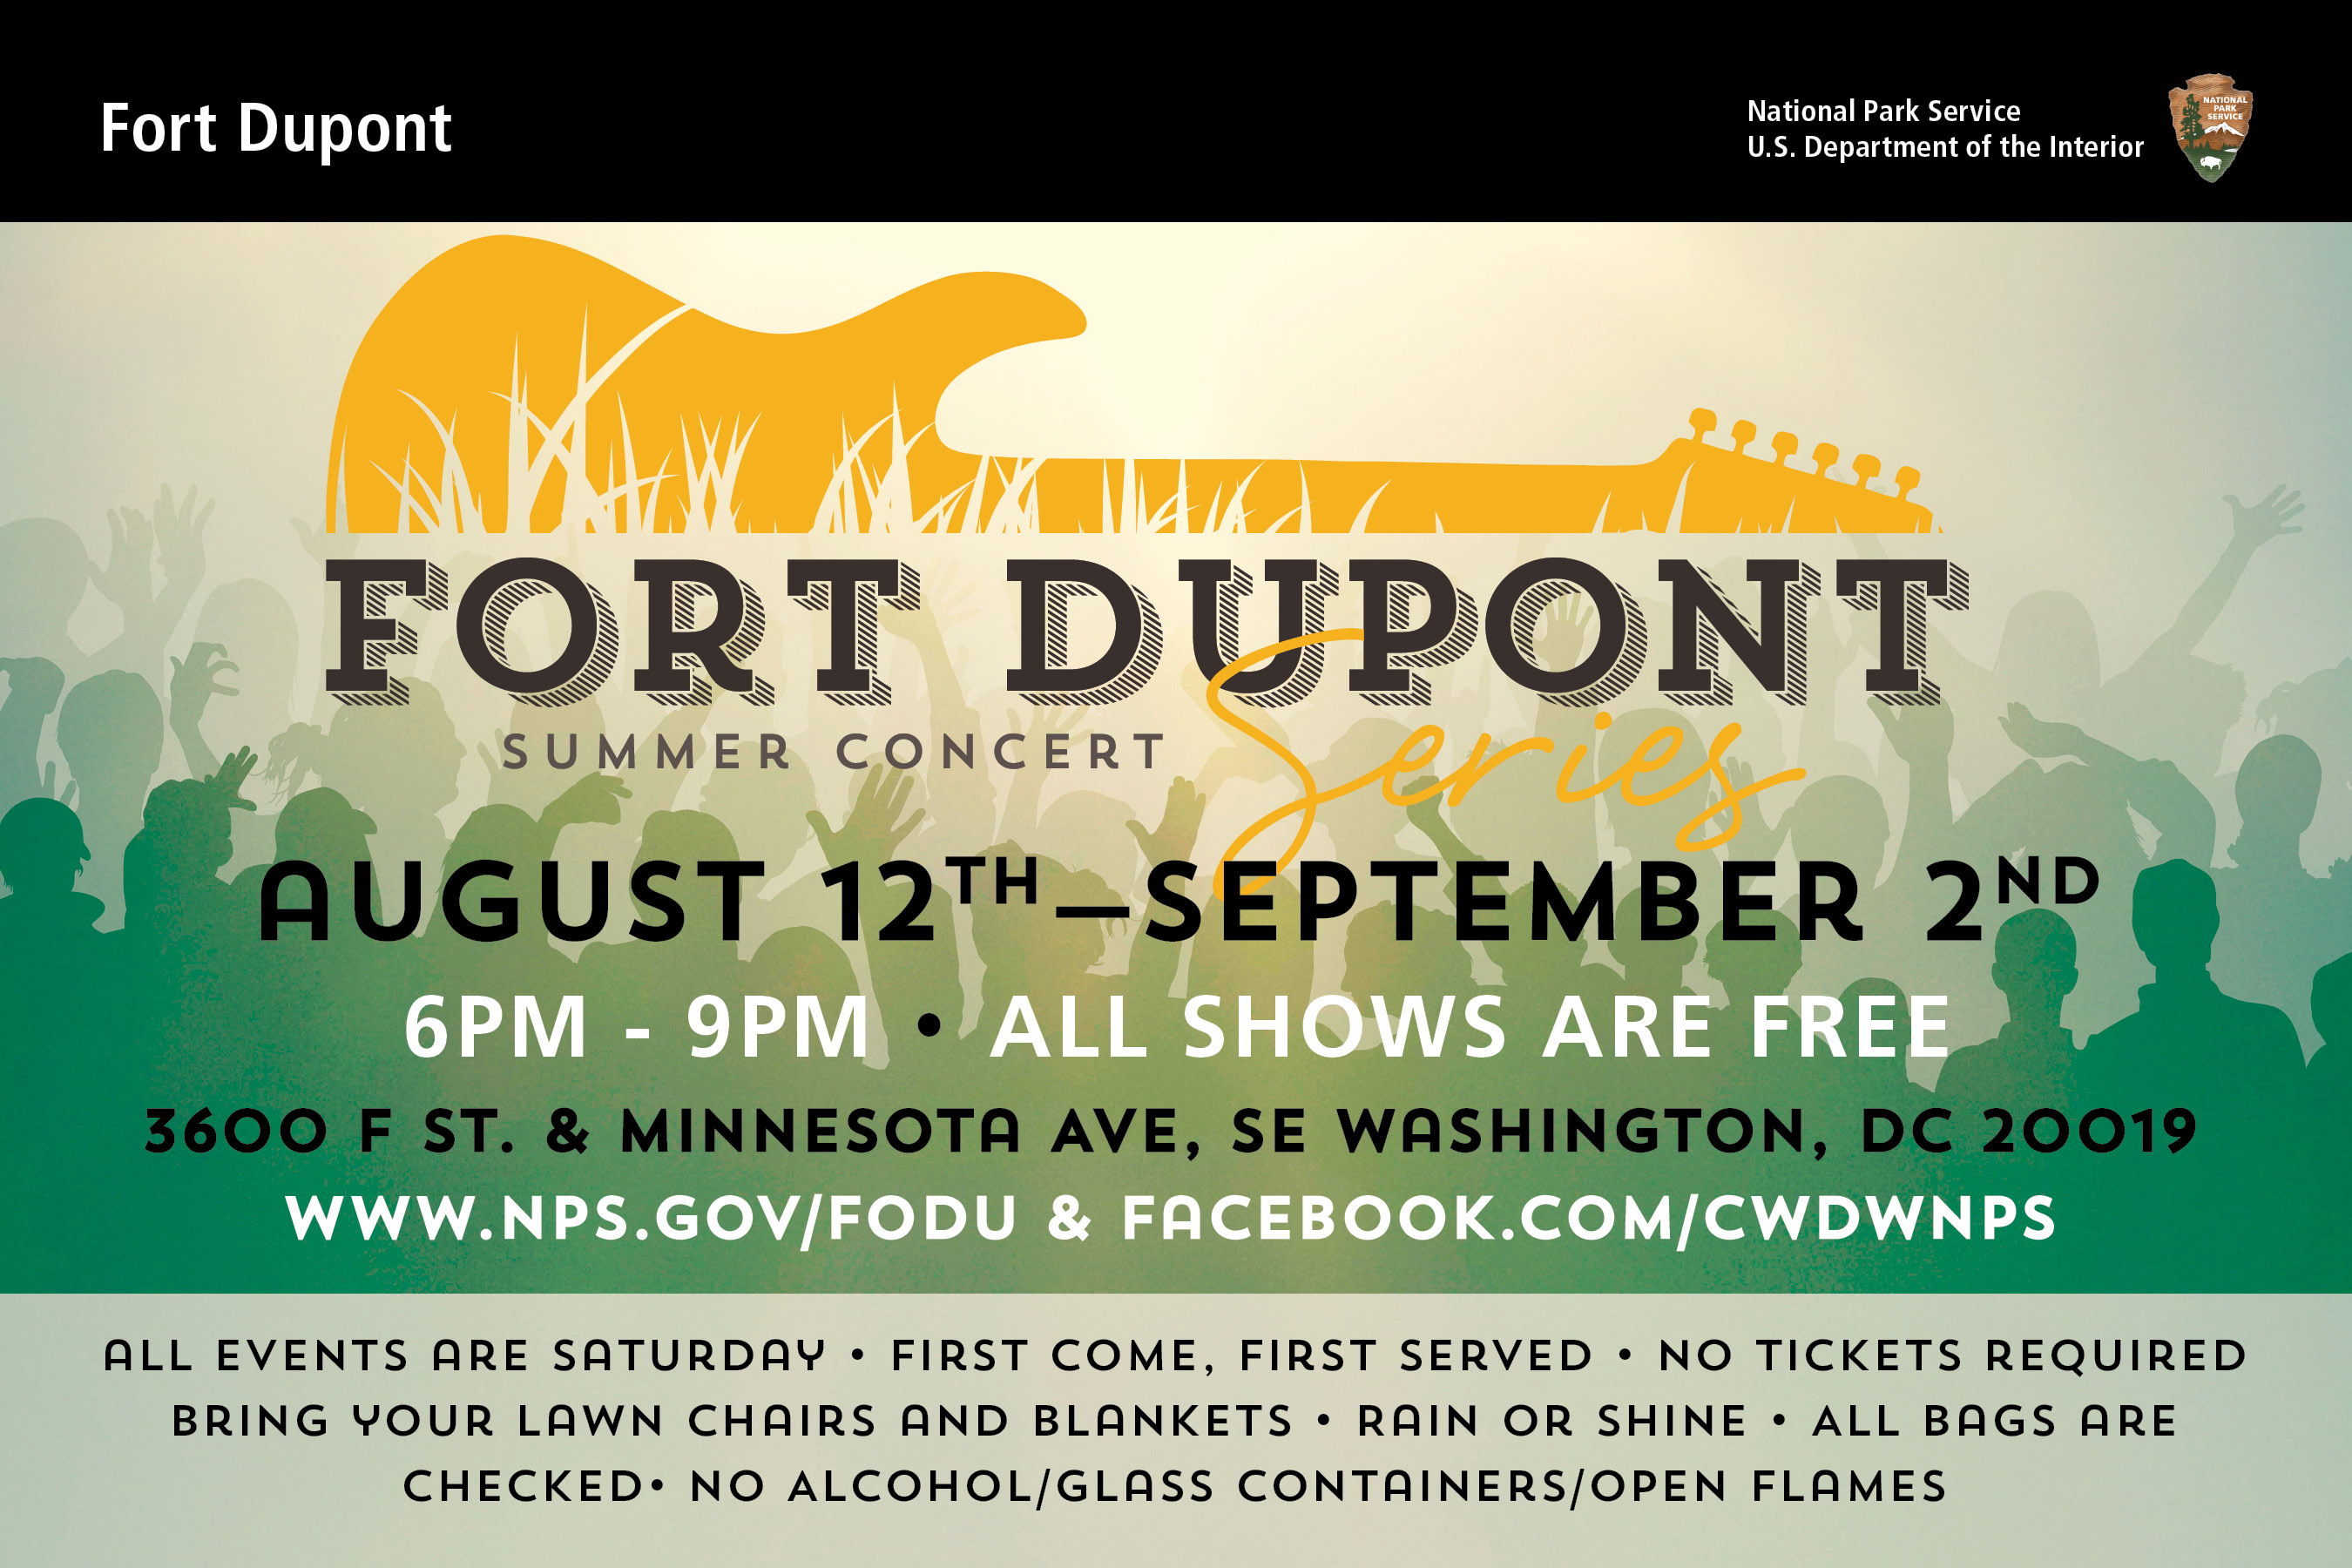 Summer Theatre Fort Dupont Park (U.S. National Park Service)